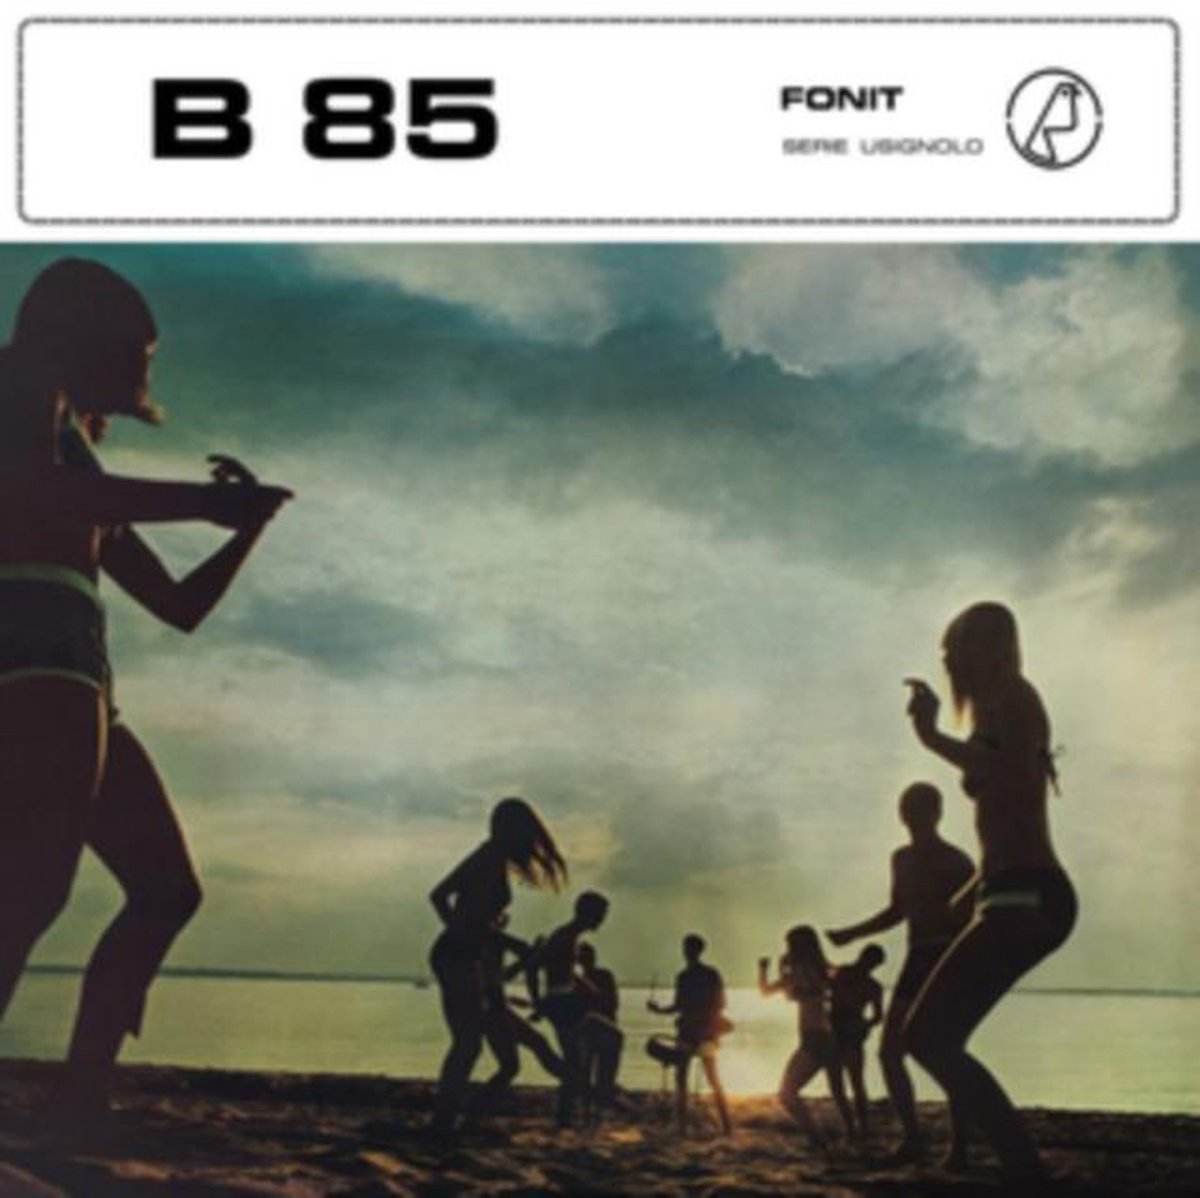 B85 Ballabili 'Anni' 70' (Pop Country)